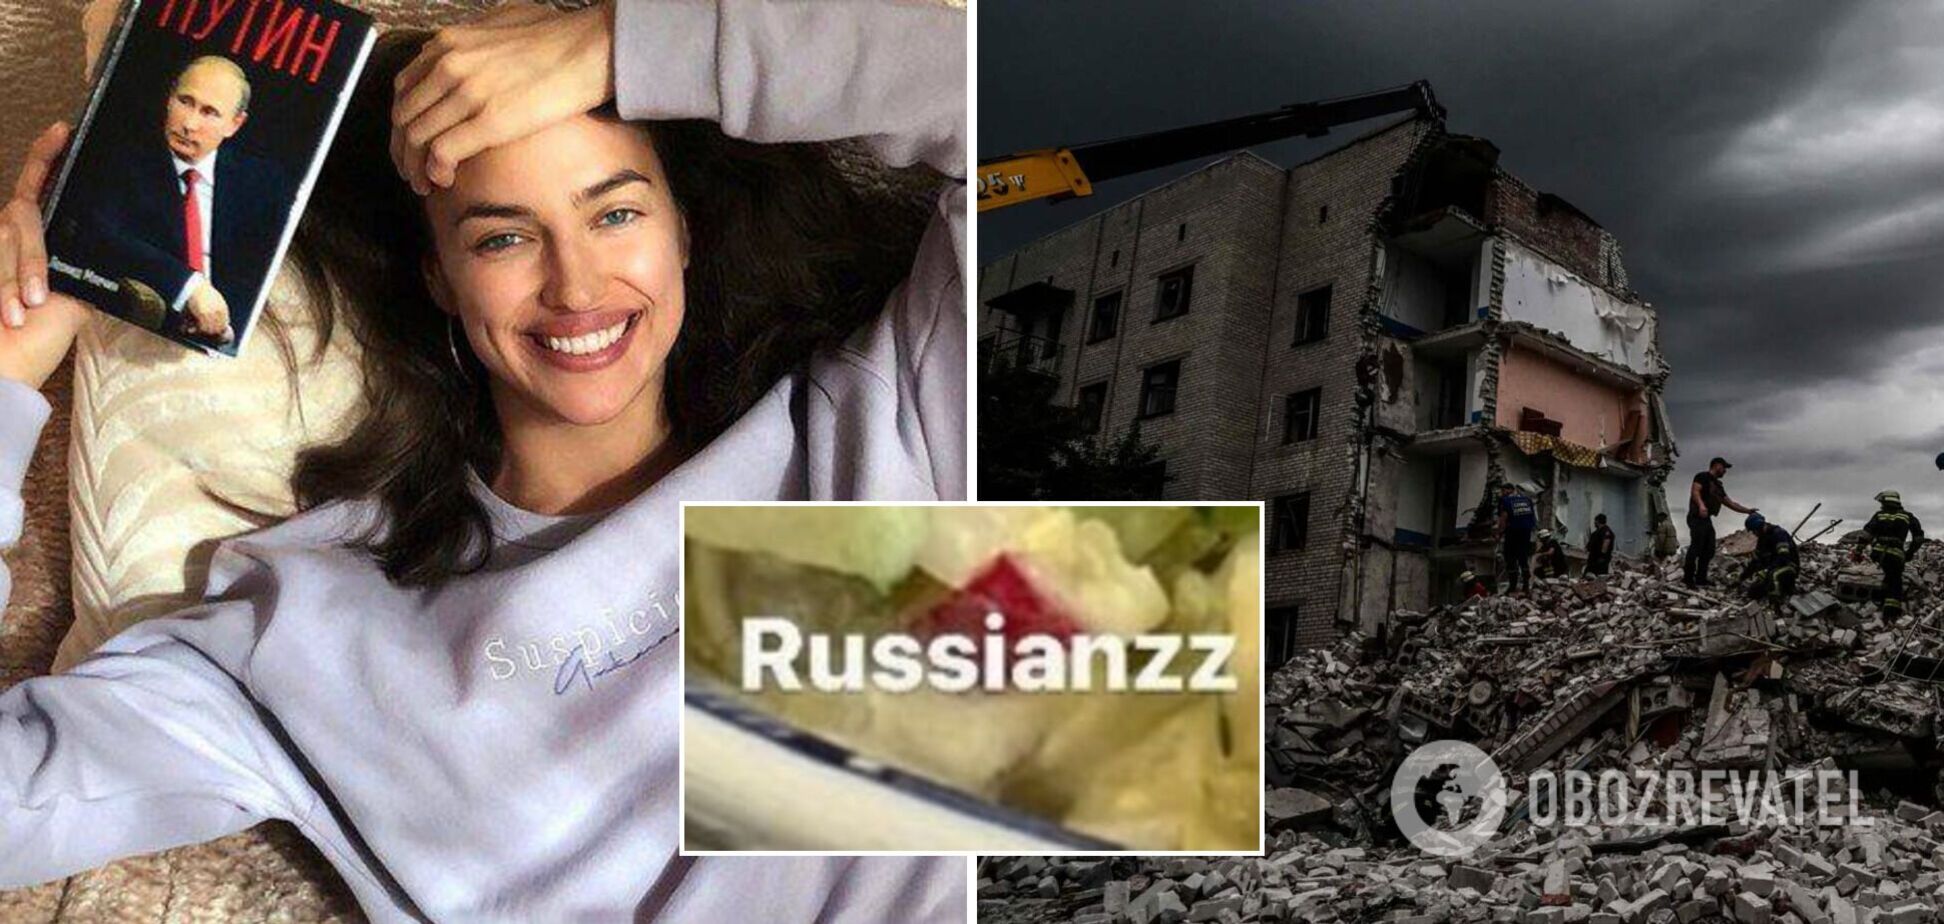 Российская супермодель Ирина Шейк попала в громкий скандал из-за фото с буквой Z – символом войны